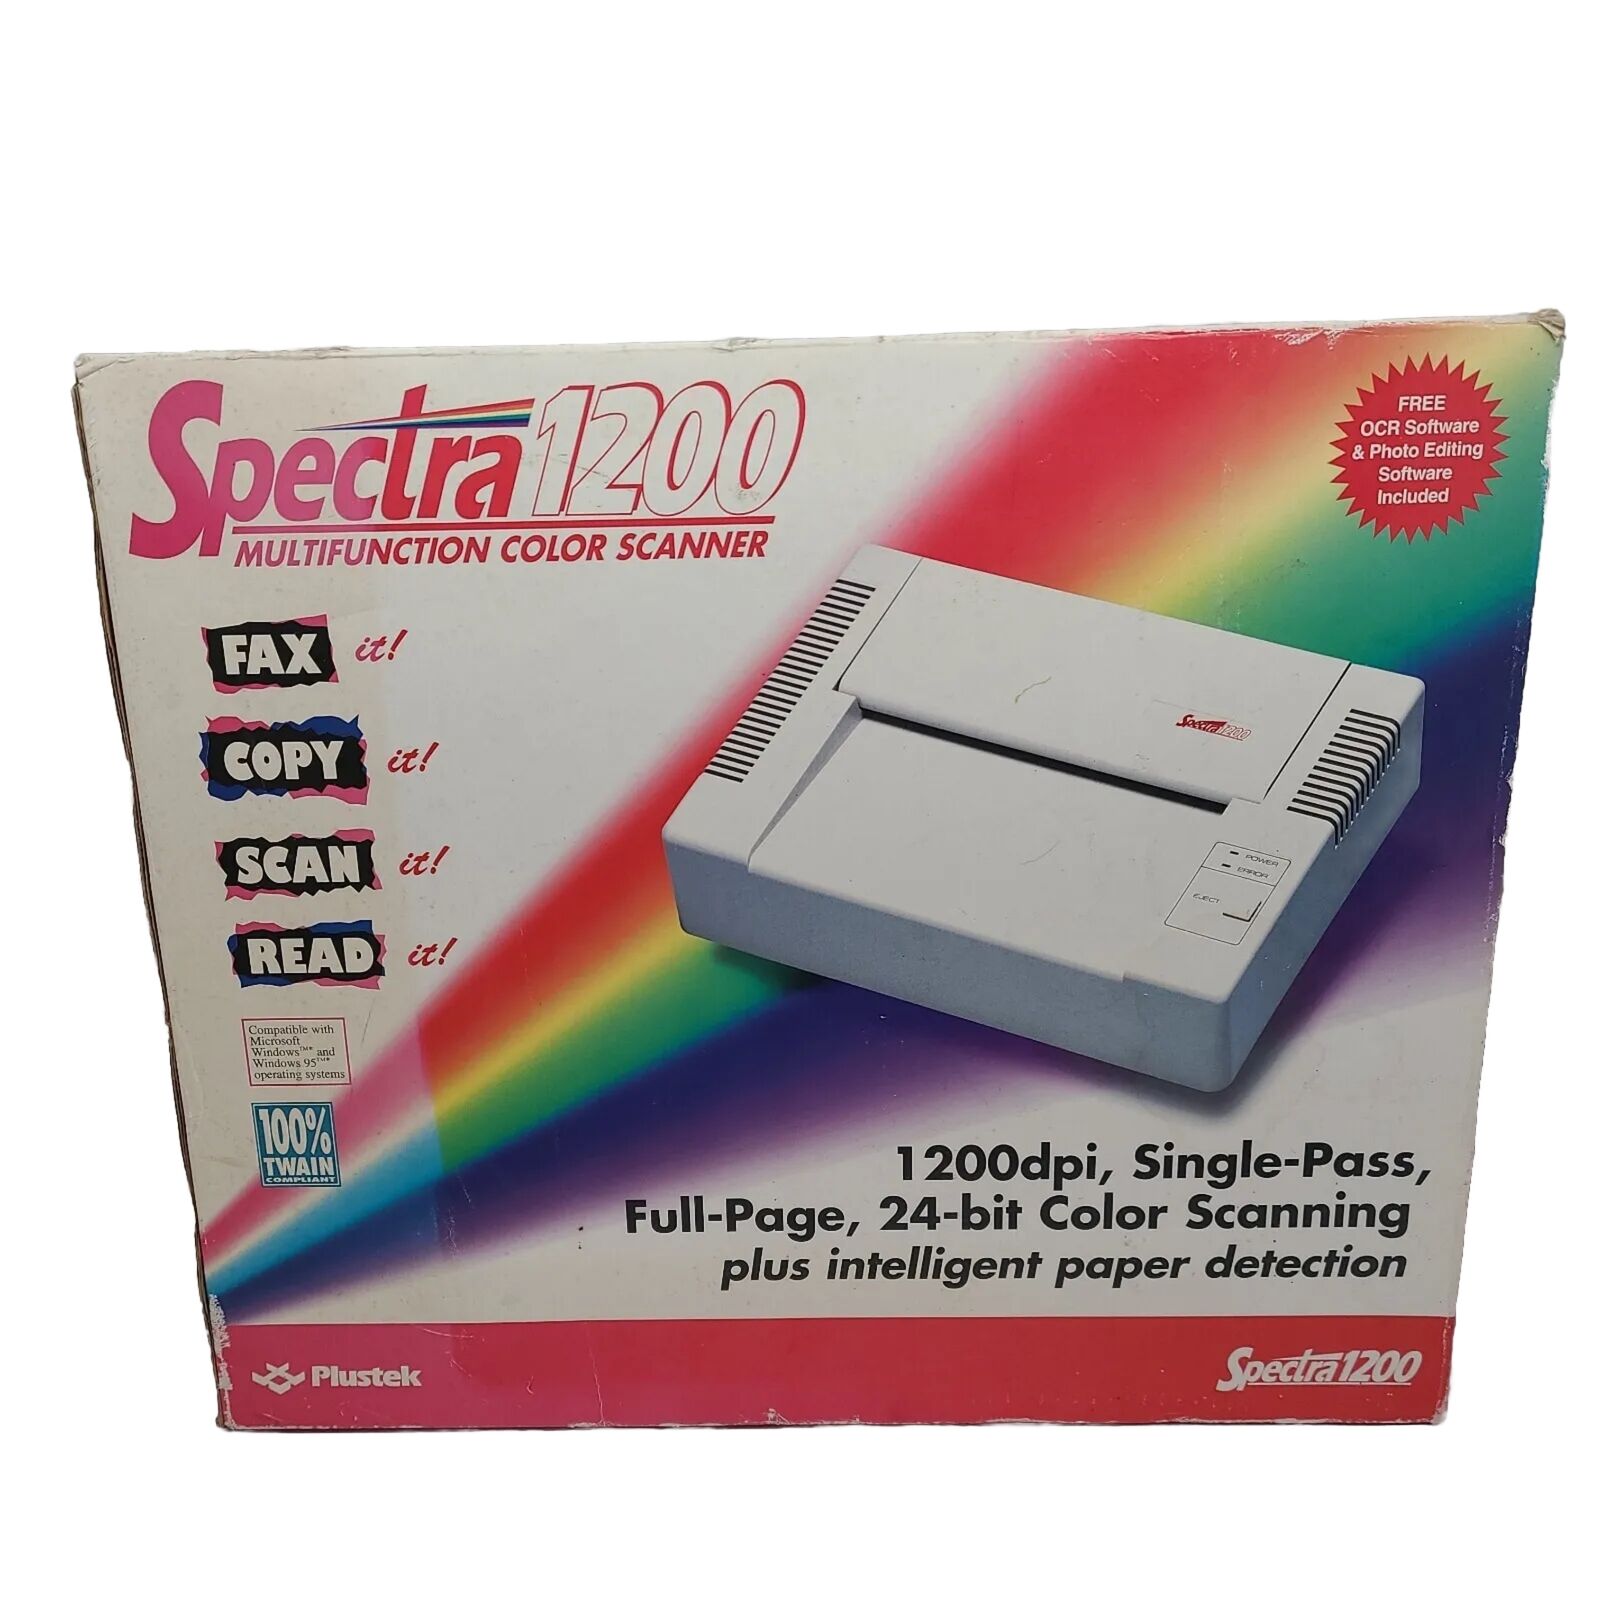 Vintage Fax Copier Color Scanner Plustek Spectra 1200 New In Box